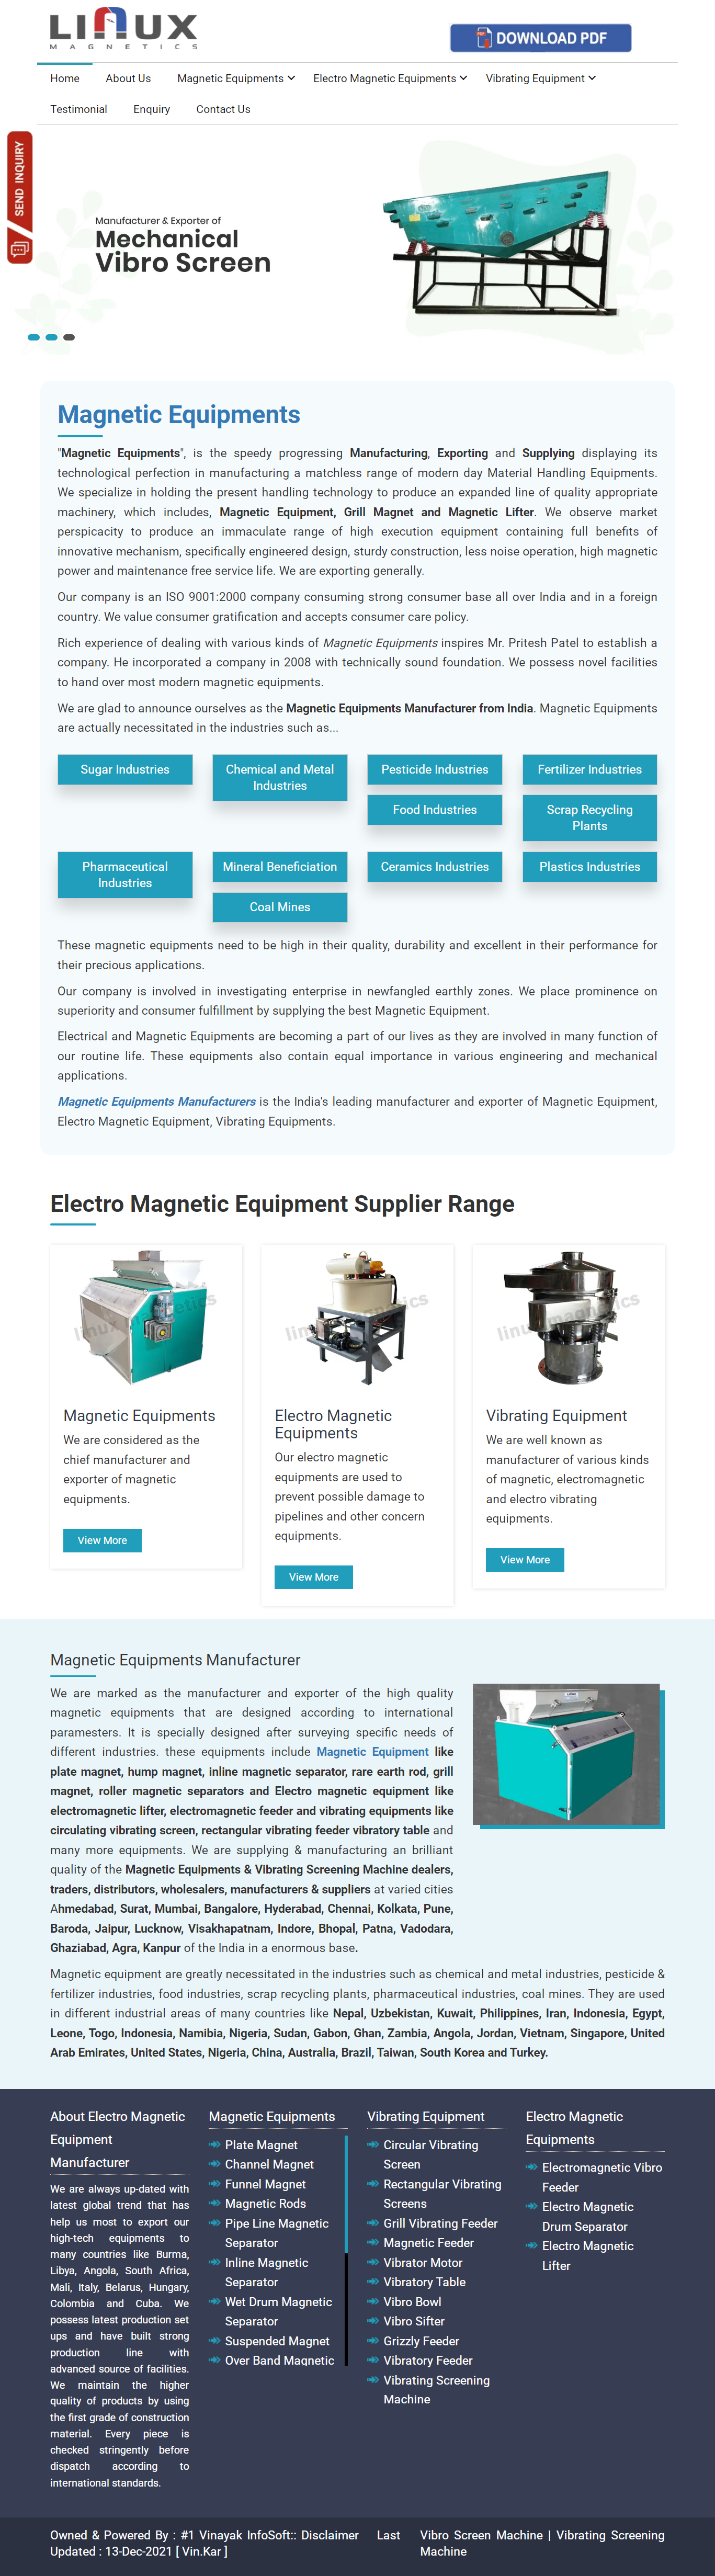 Magnetic Equipments